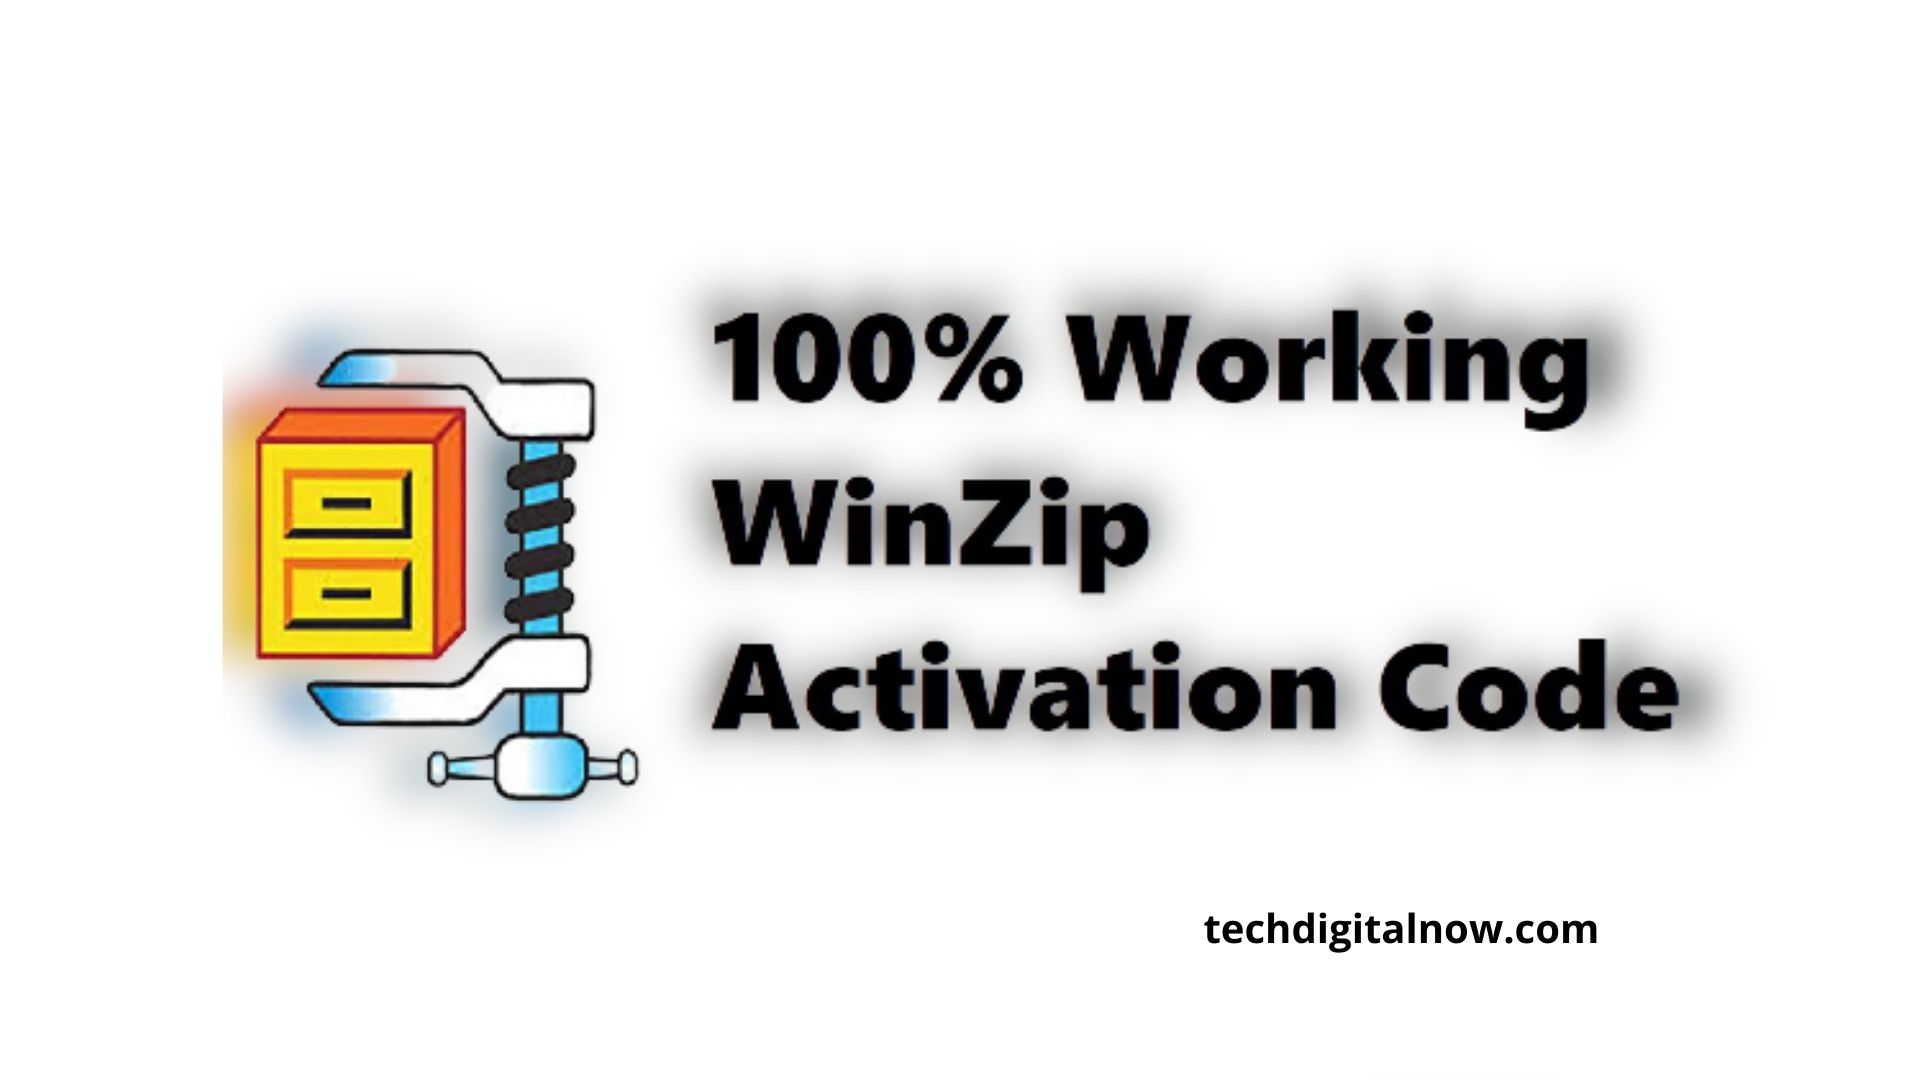 winzip 22.5 activation code free download